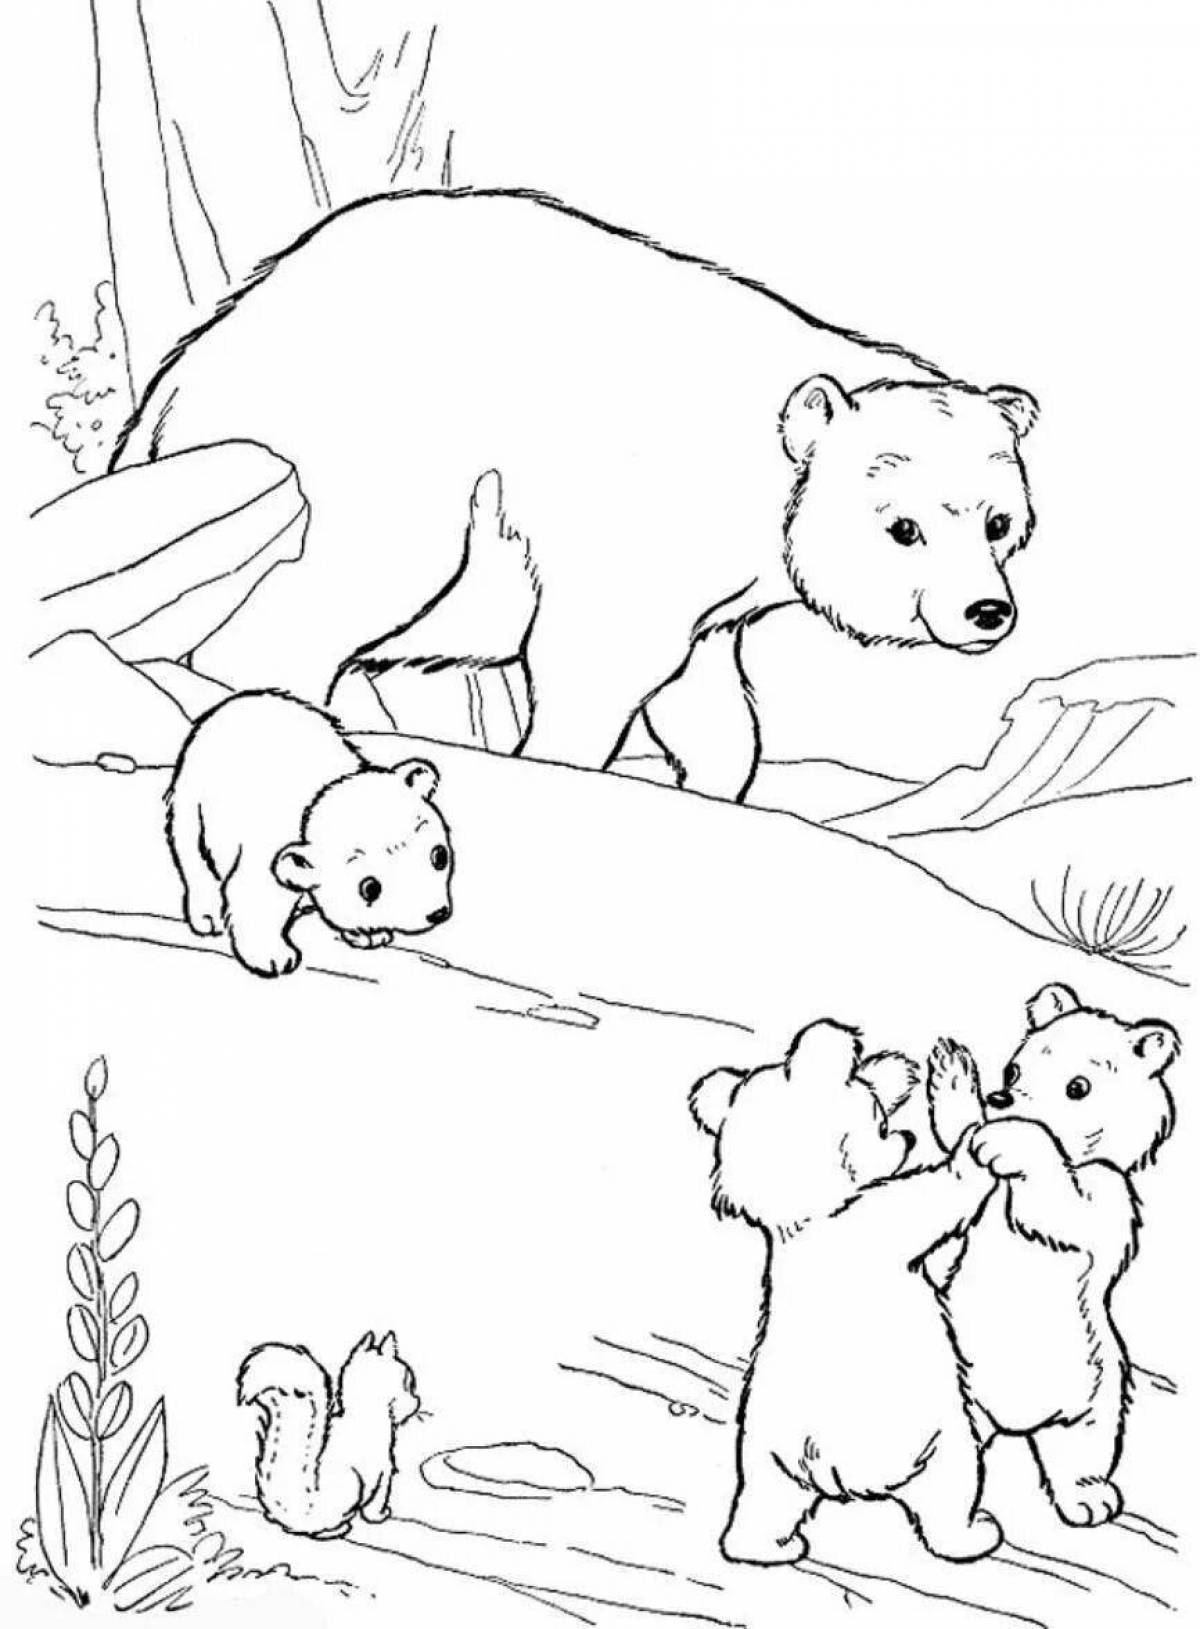 Рисунок сладкого медведя для детей